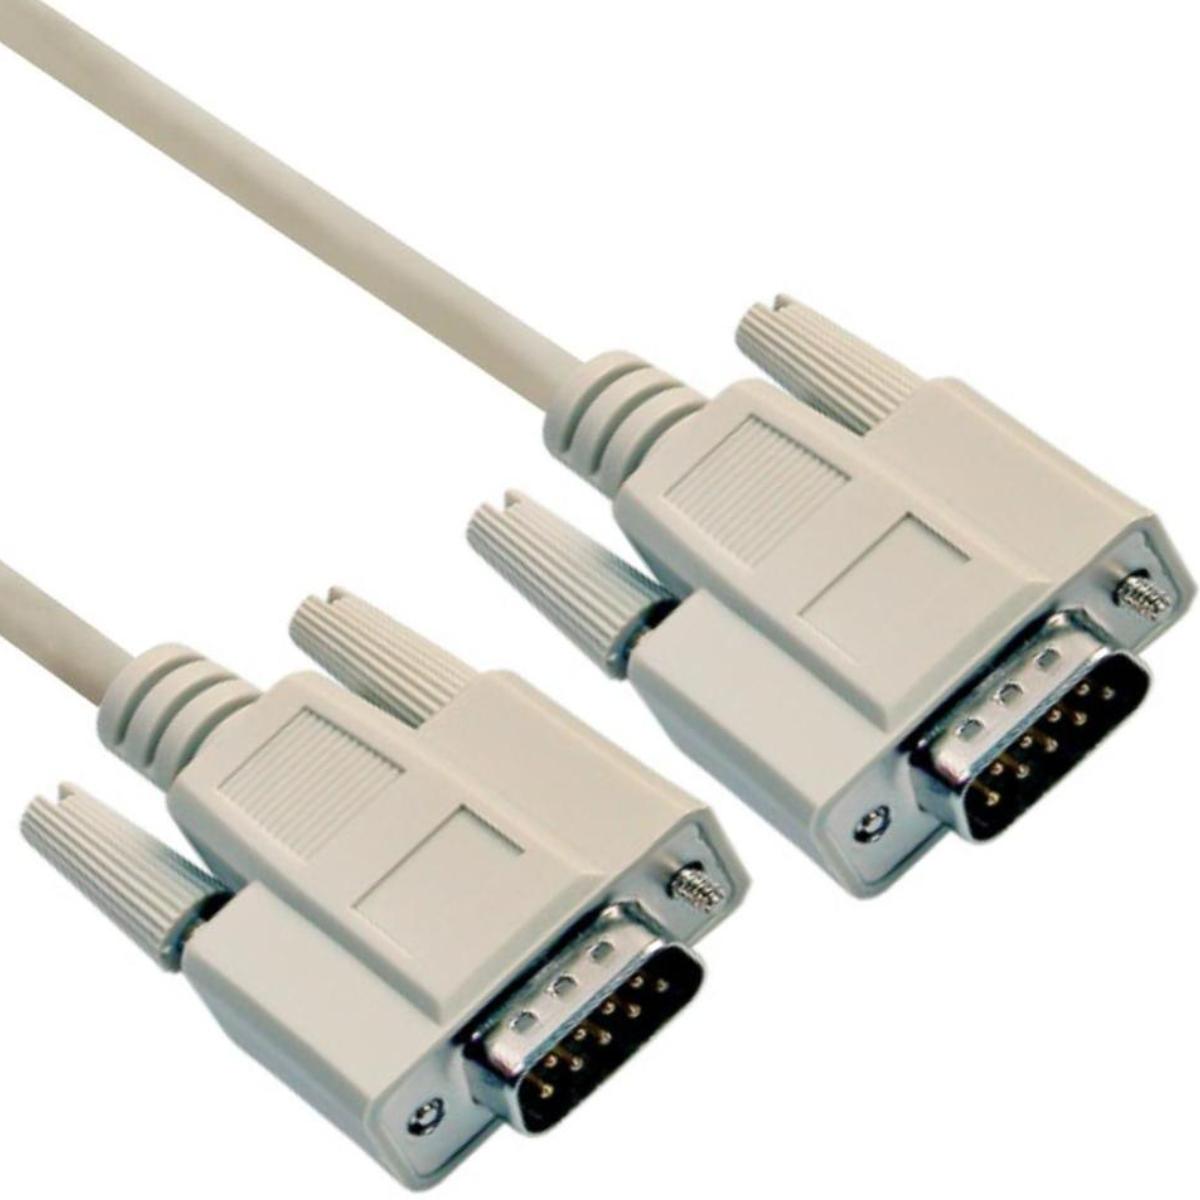 RS232 kabel 2 meter - ECO